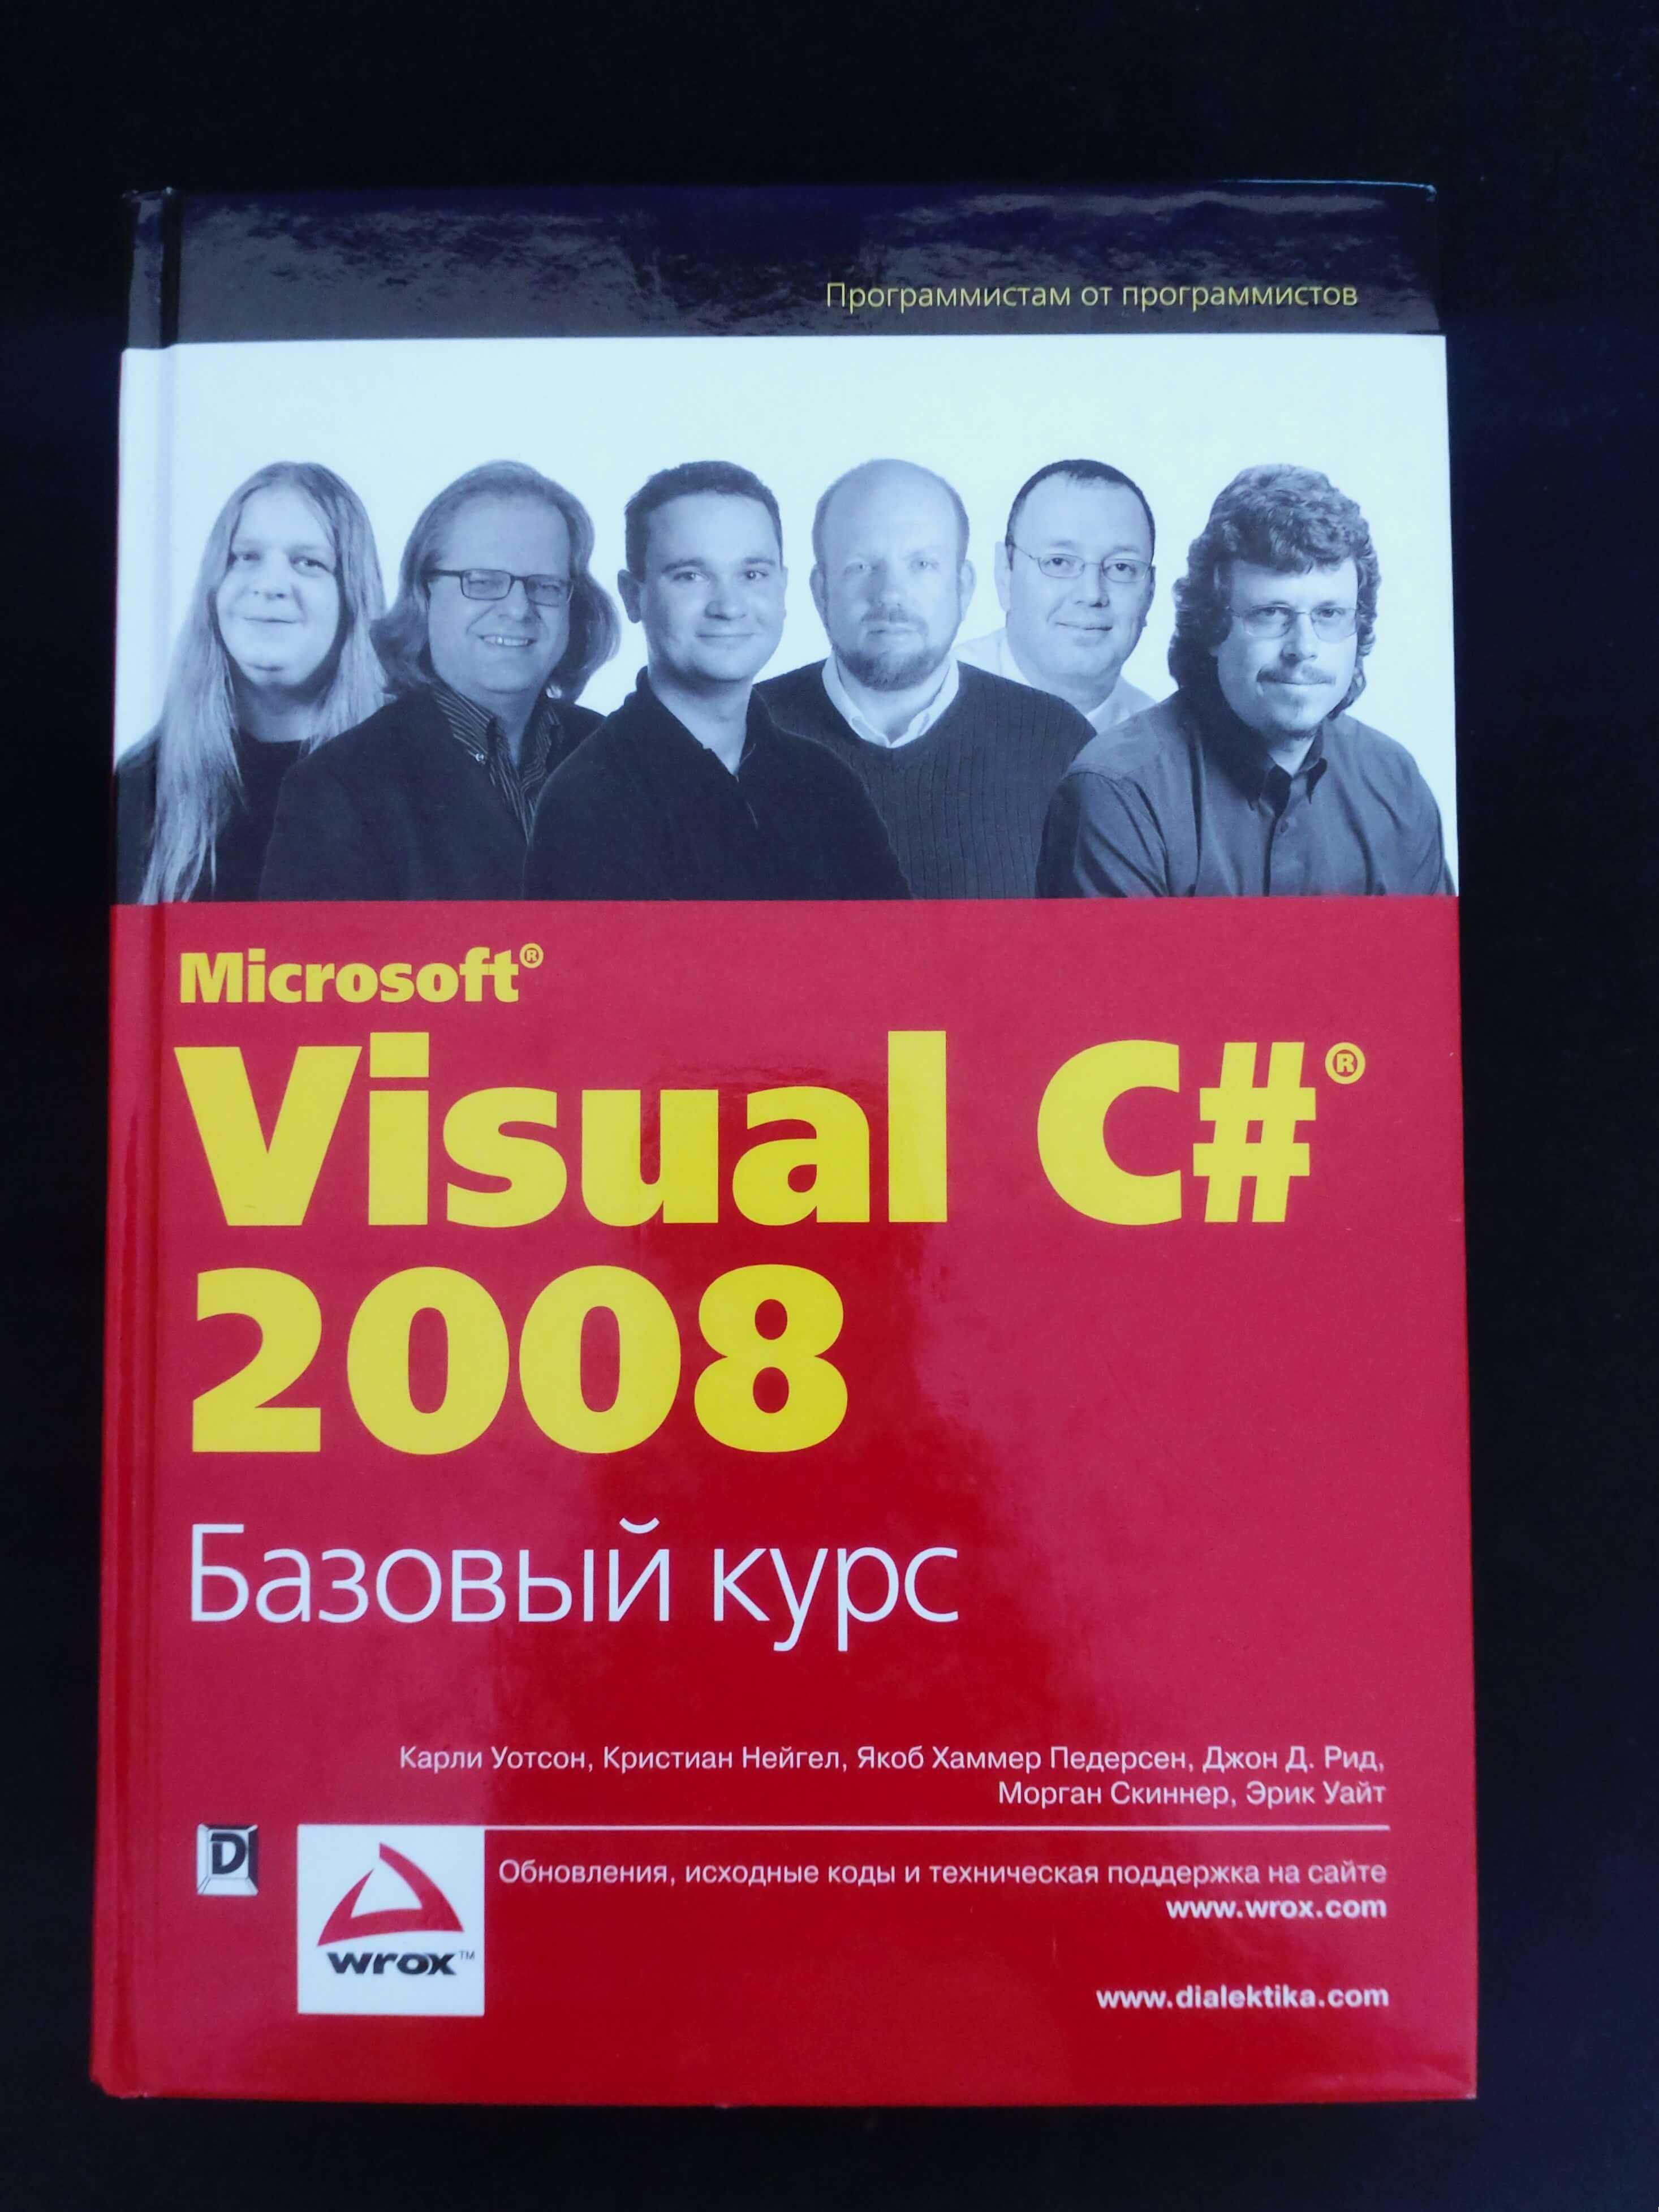 Visual C# 2008 (.NET 3.5) Базовий курс: технічна книга, програмування